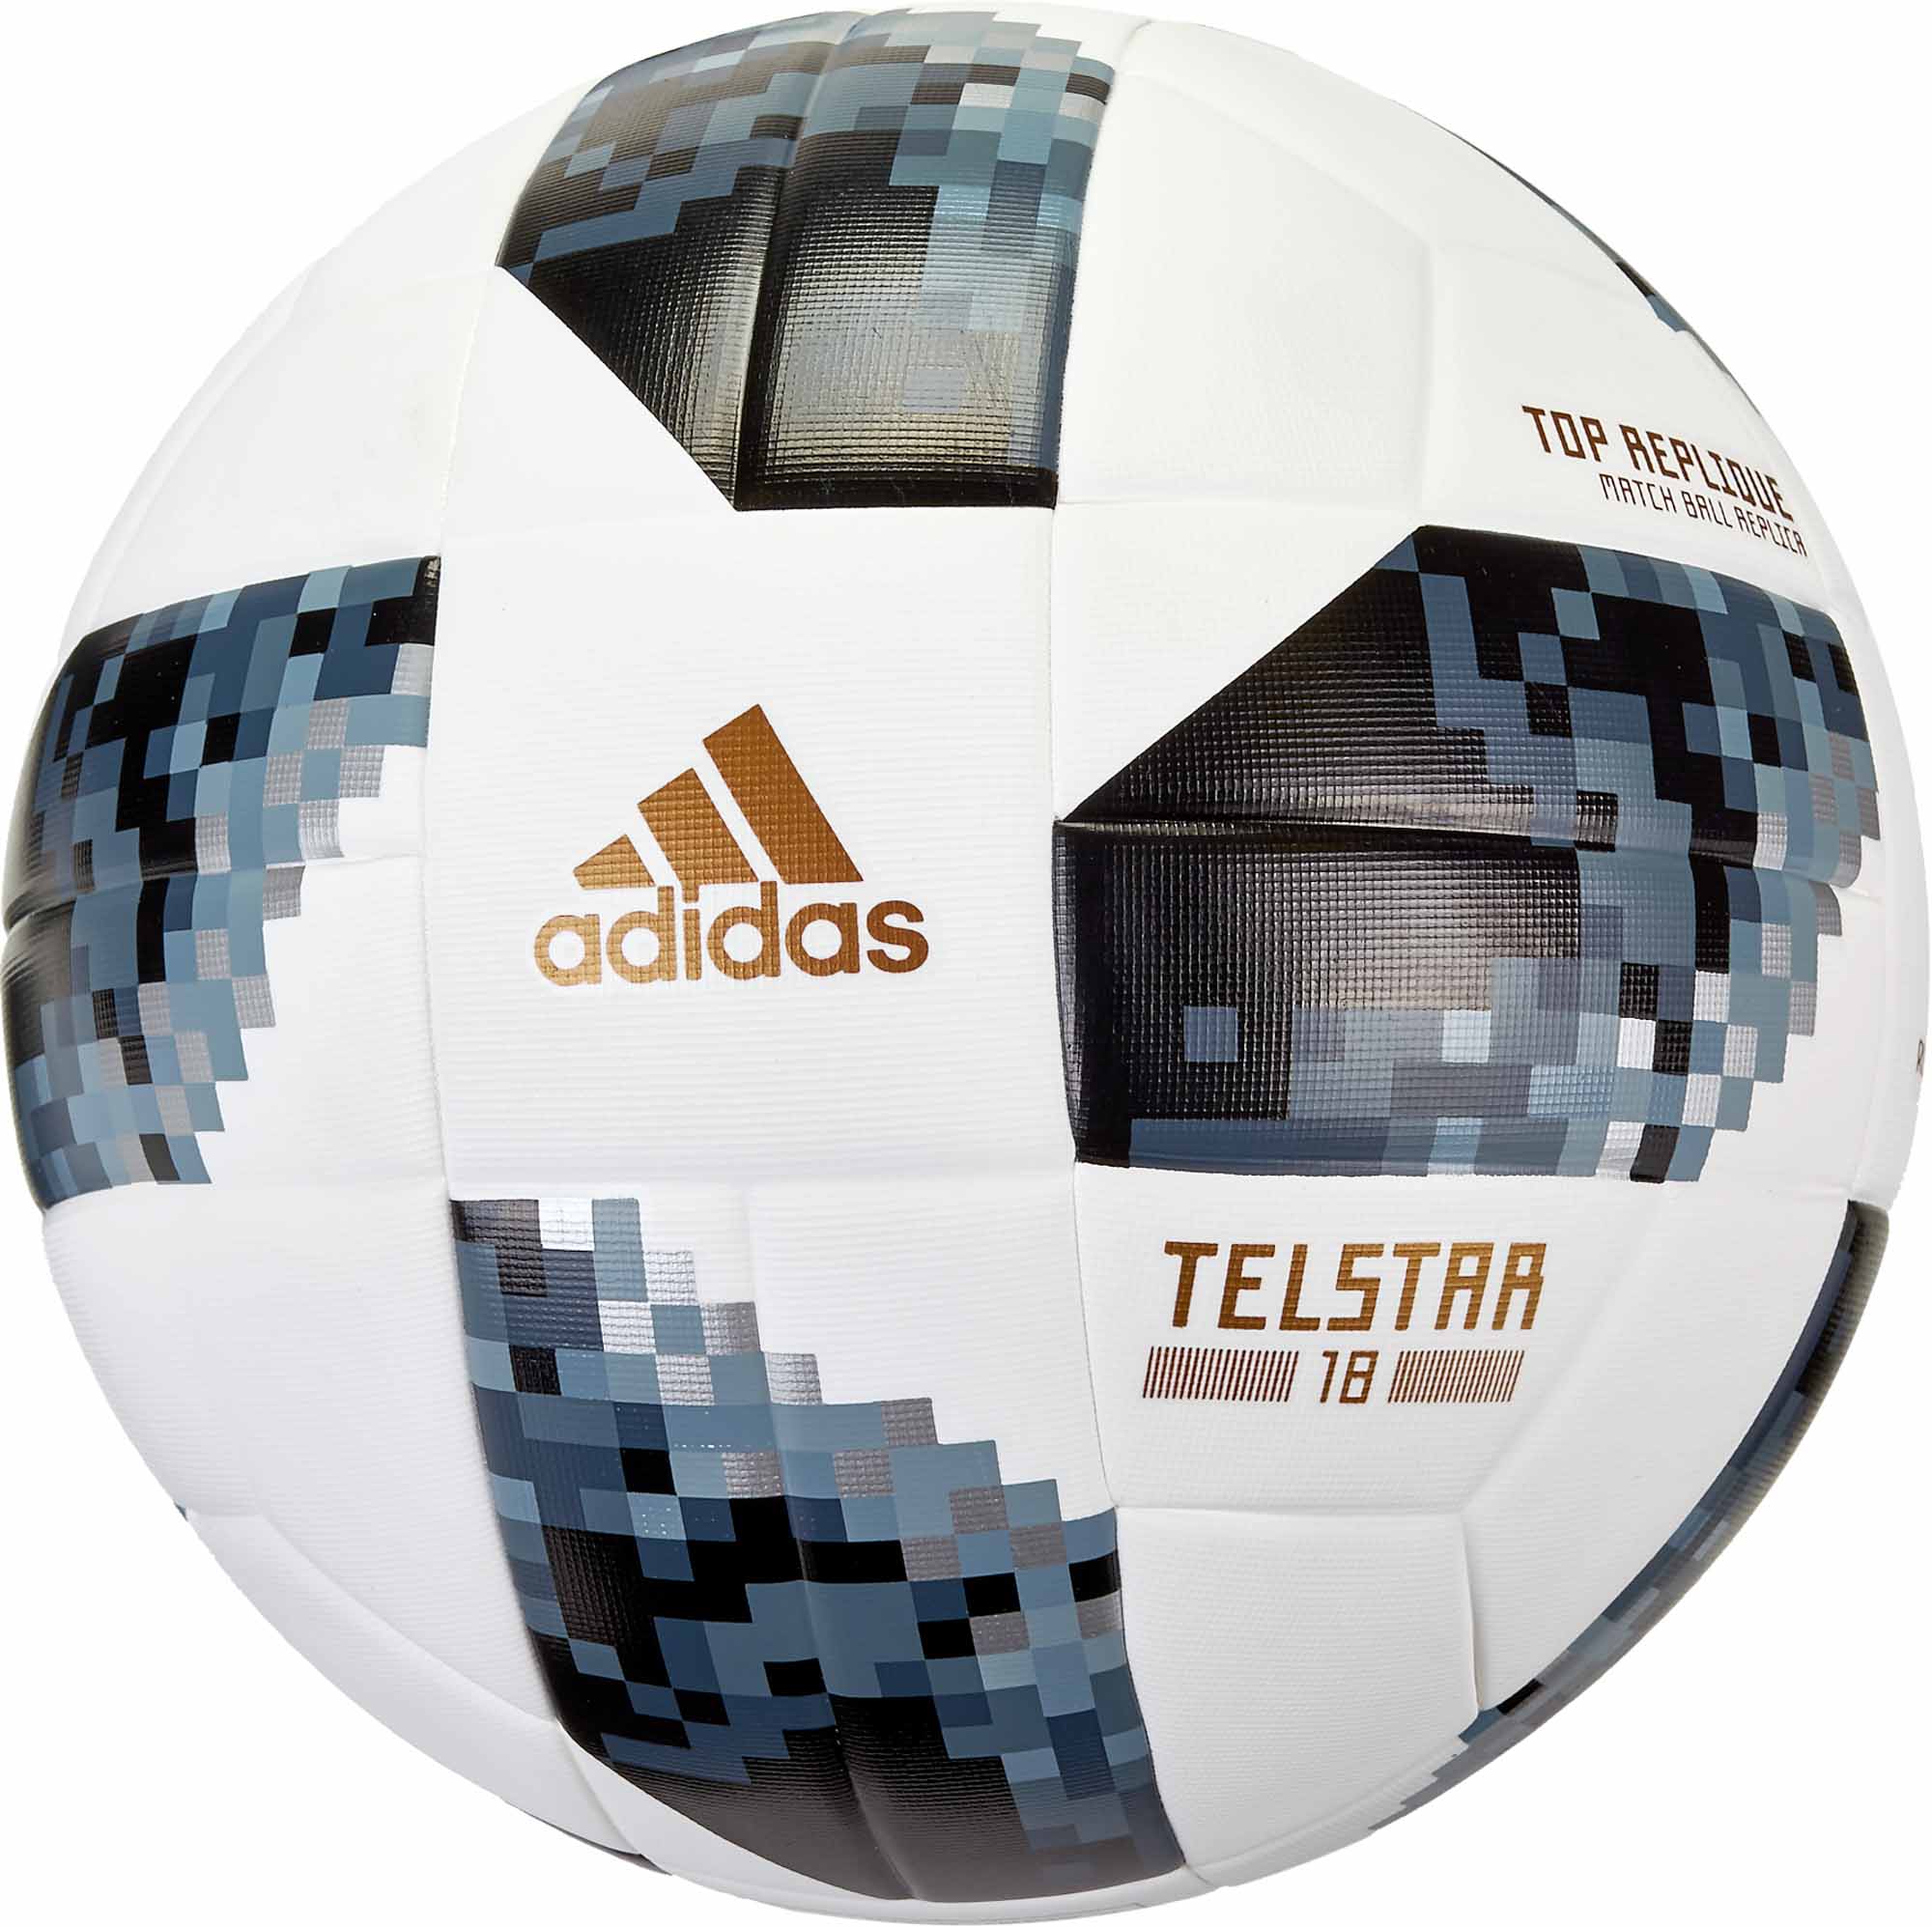 adidas telstar soccer ball